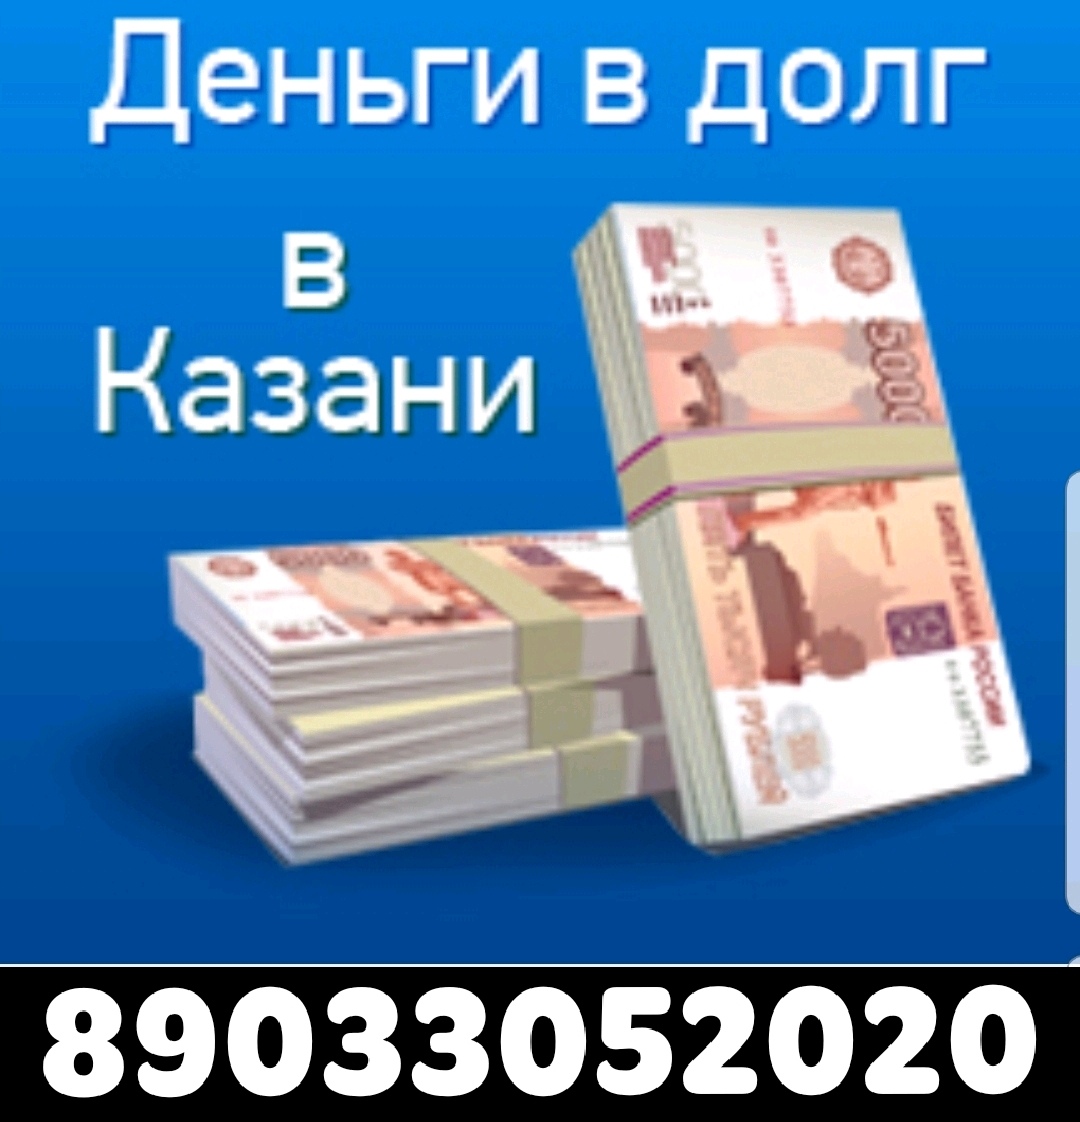 Взять Денежные займы в Казани срочно онлайн